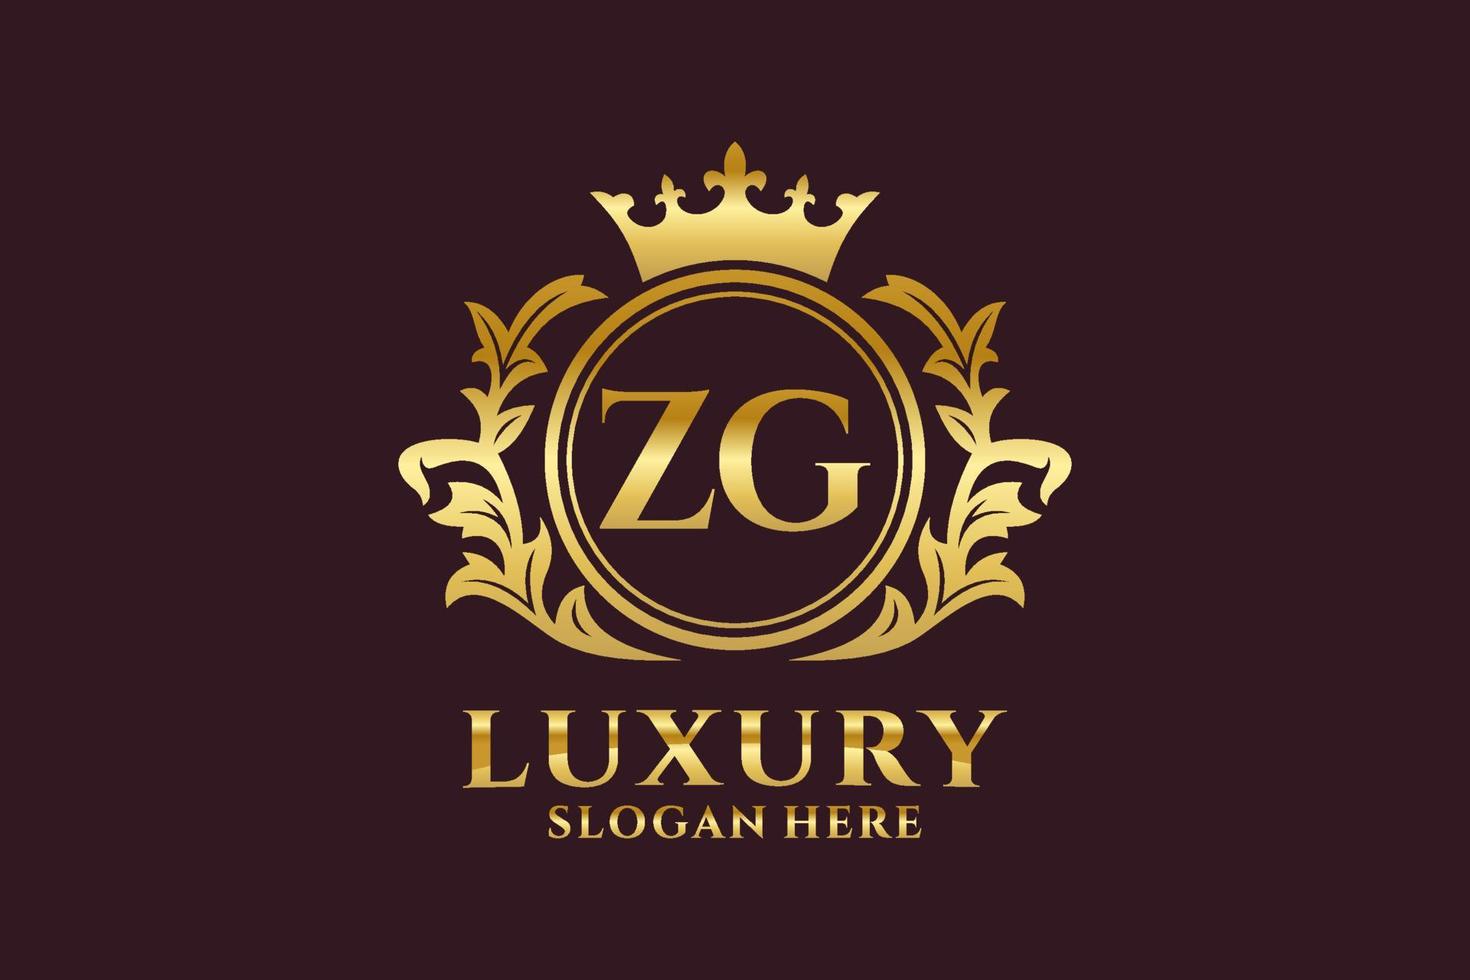 plantilla de logotipo de lujo real con letra zg inicial en arte vectorial para proyectos de marca de lujo y otras ilustraciones vectoriales. vector